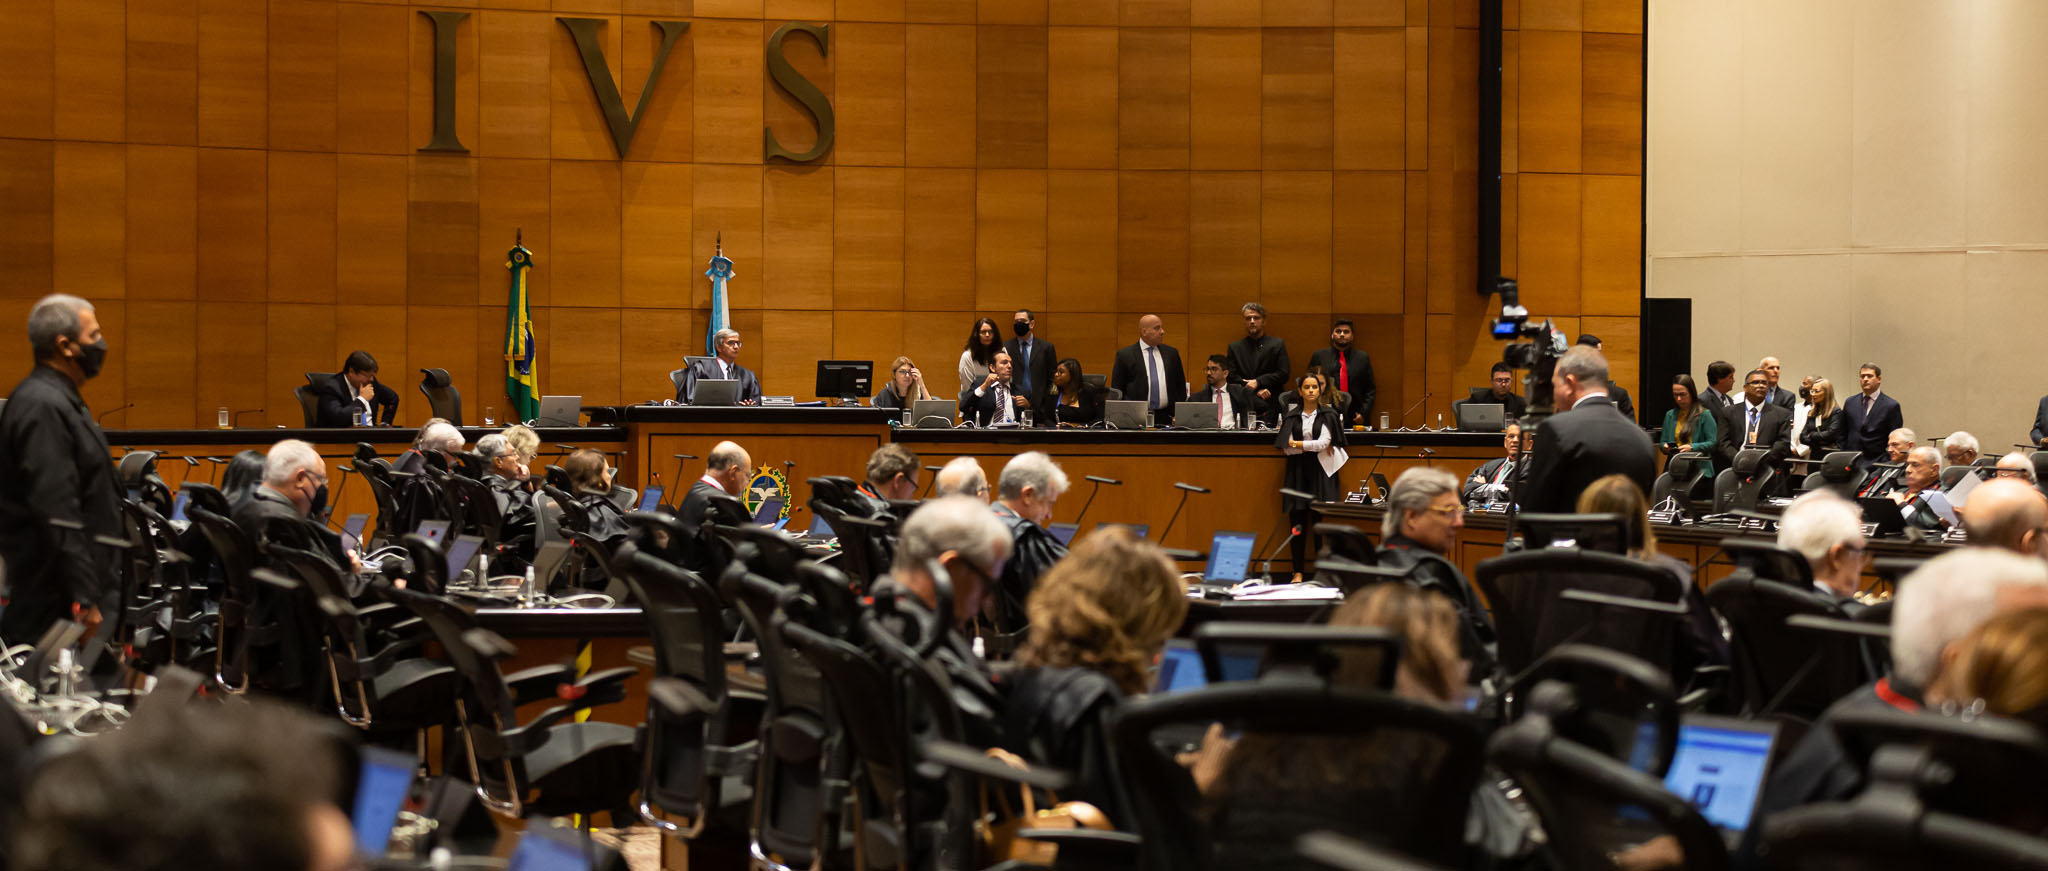 Imagem dos desembargadores no plenário do Tribunal Pleno durante votação da lista tríplice pelo quinto constitucional